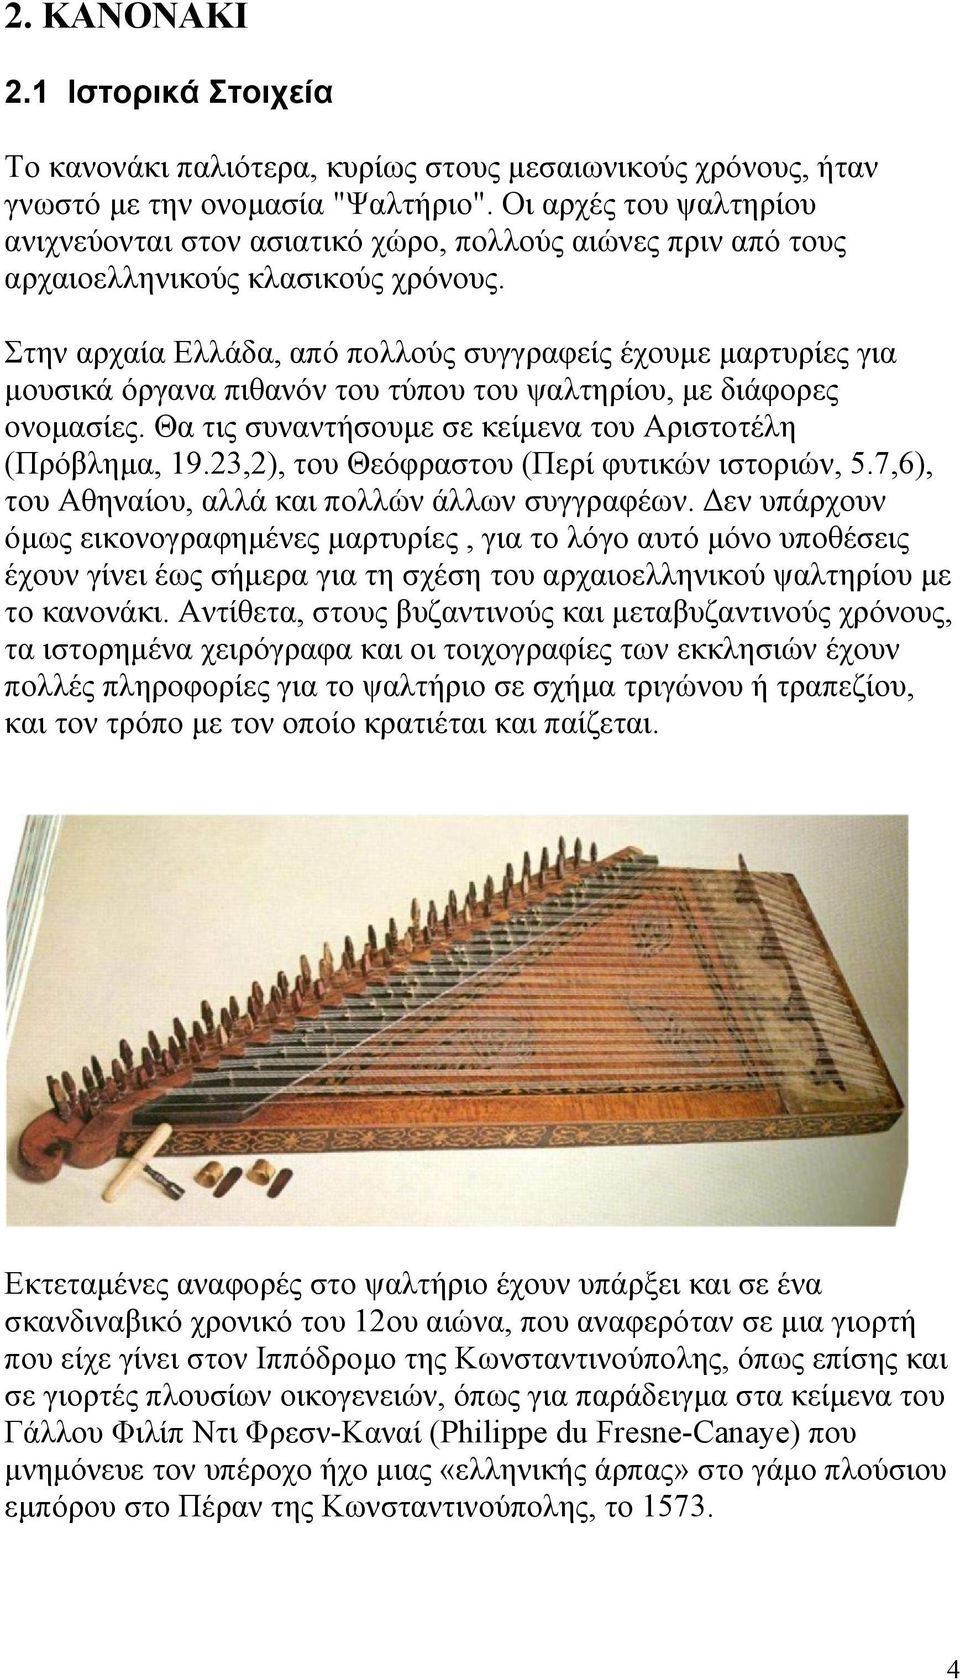 Στην αρχαία Ελλάδα, από πολλούς συγγραφείς έχουμε μαρτυρίες για μουσικά όργανα πιθανόν του τύπου του ψαλτηρίου, με διάφορες ονομασίες. Θα τις συναντήσουμε σε κείμενα του Αριστοτέλη (Πρόβλημα, 19.